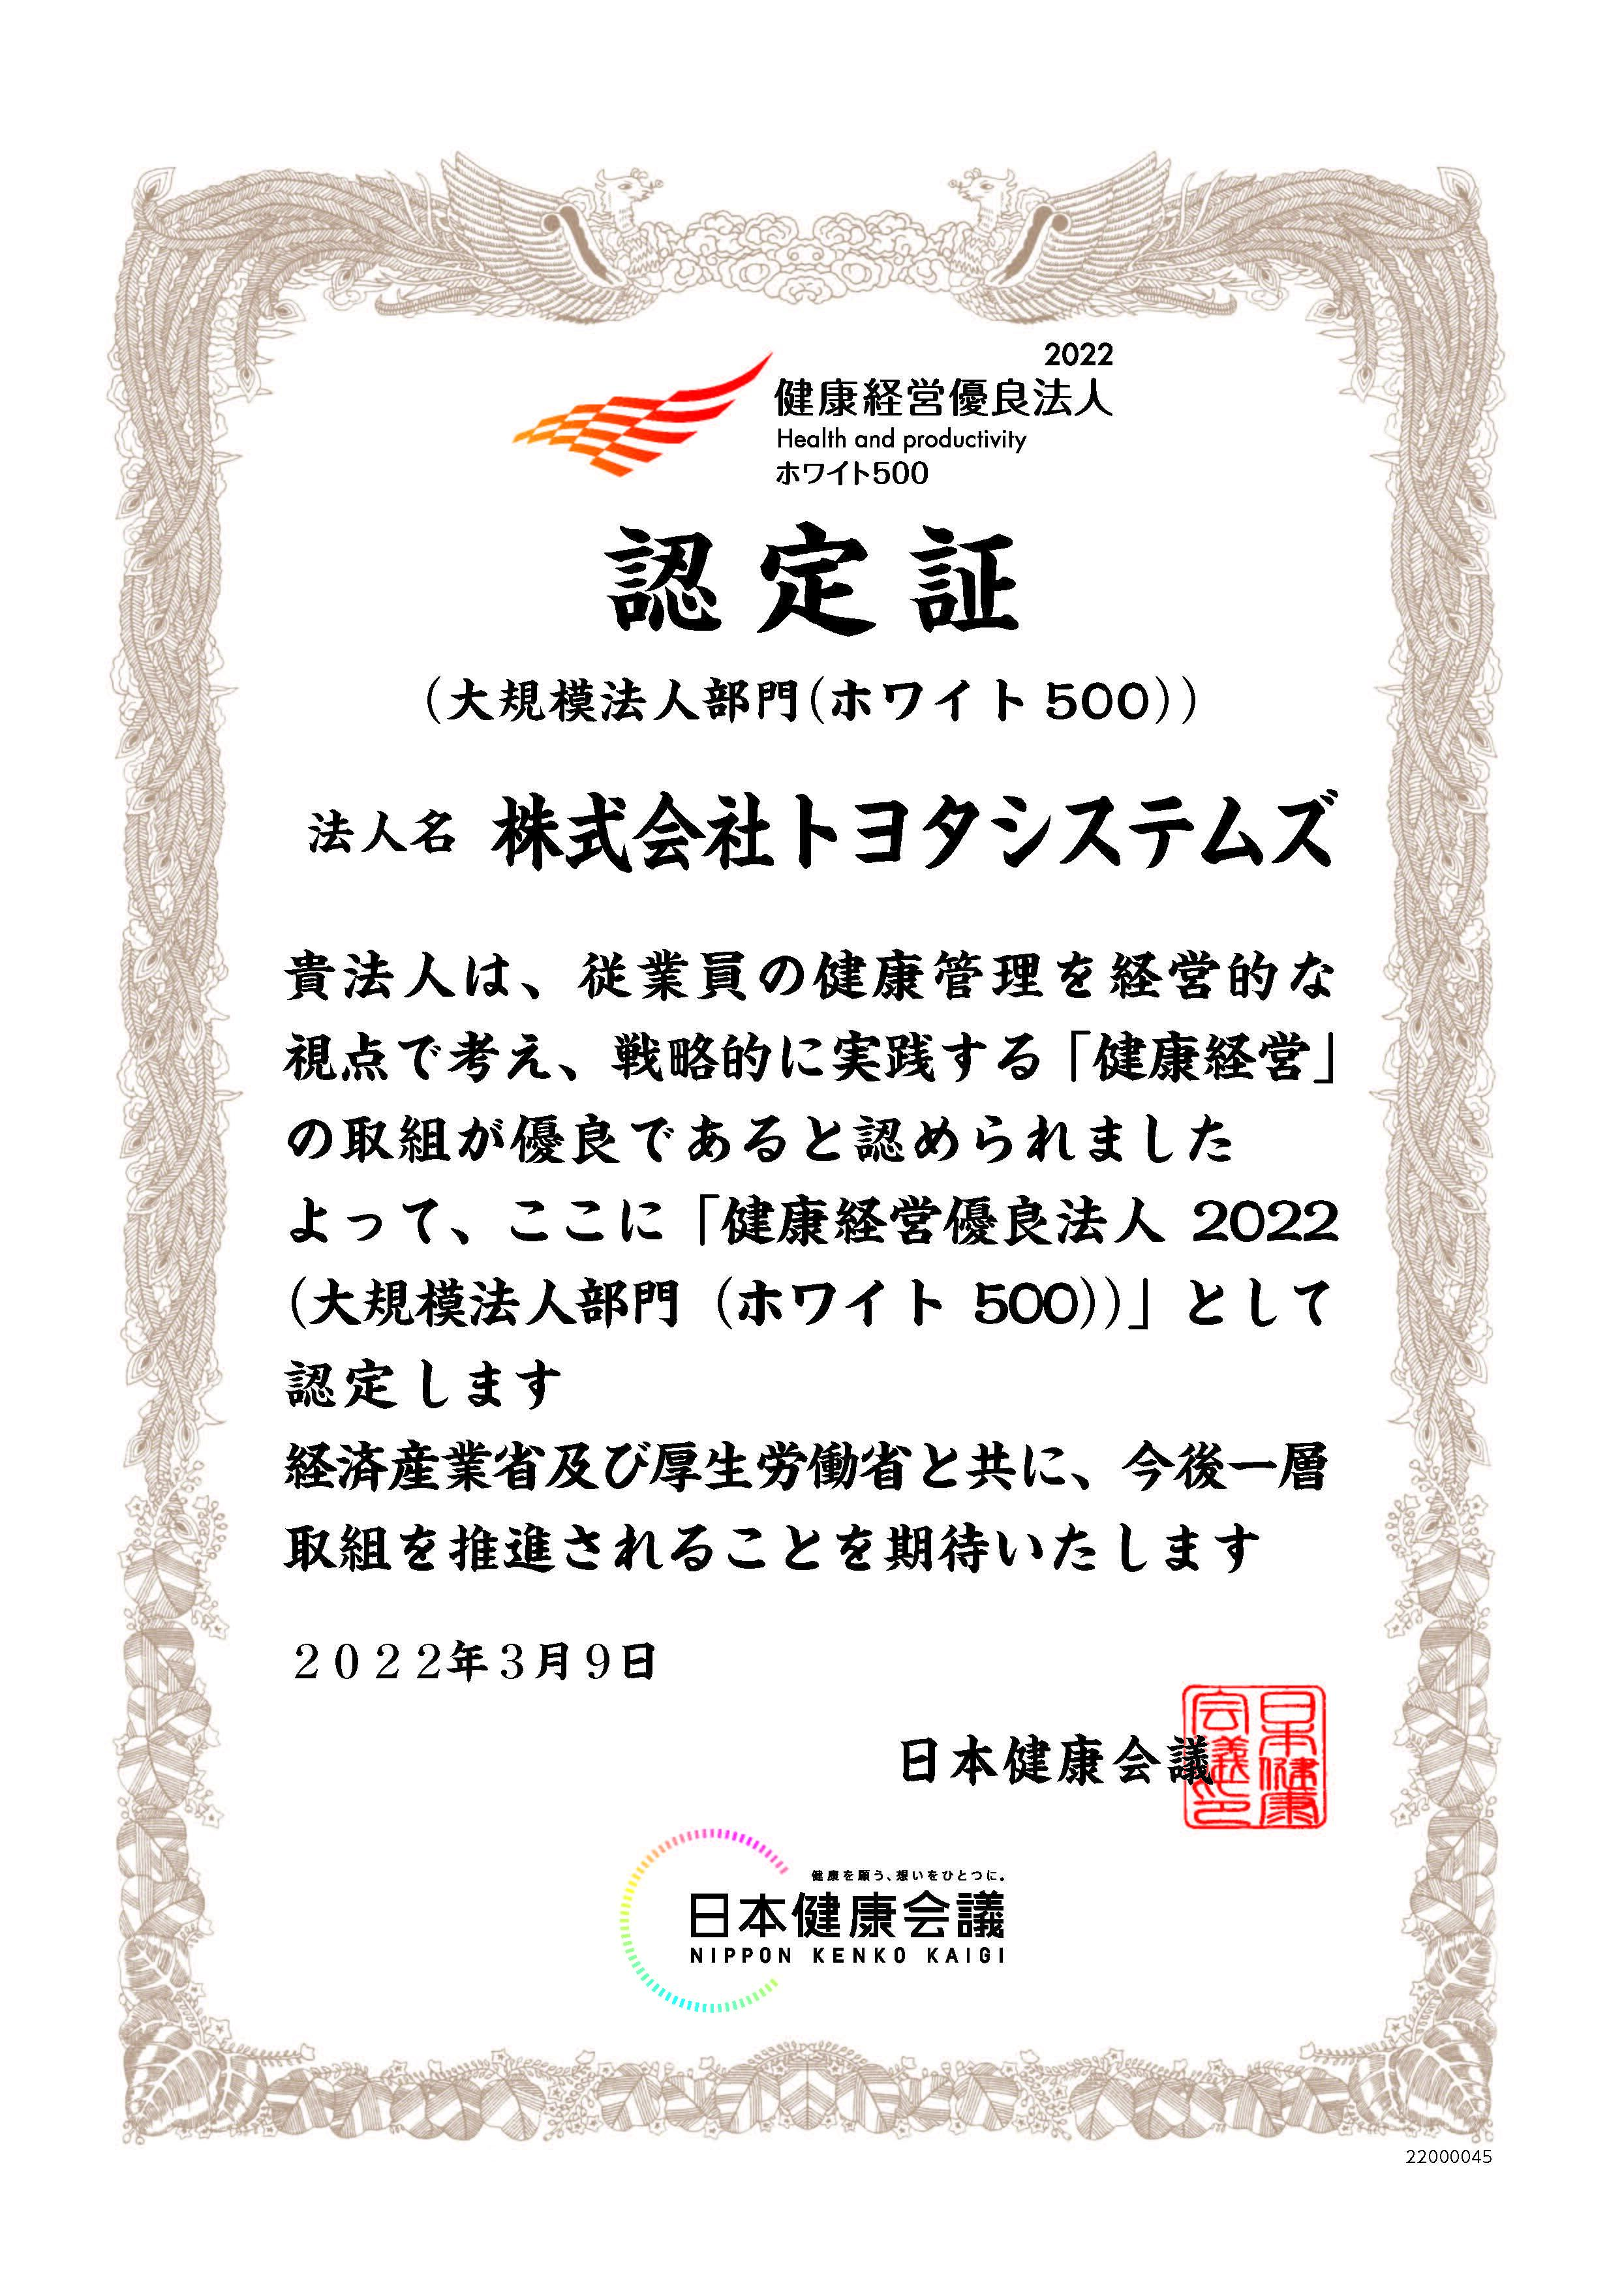 22000045_株式会社トヨタシステムズ.jpg